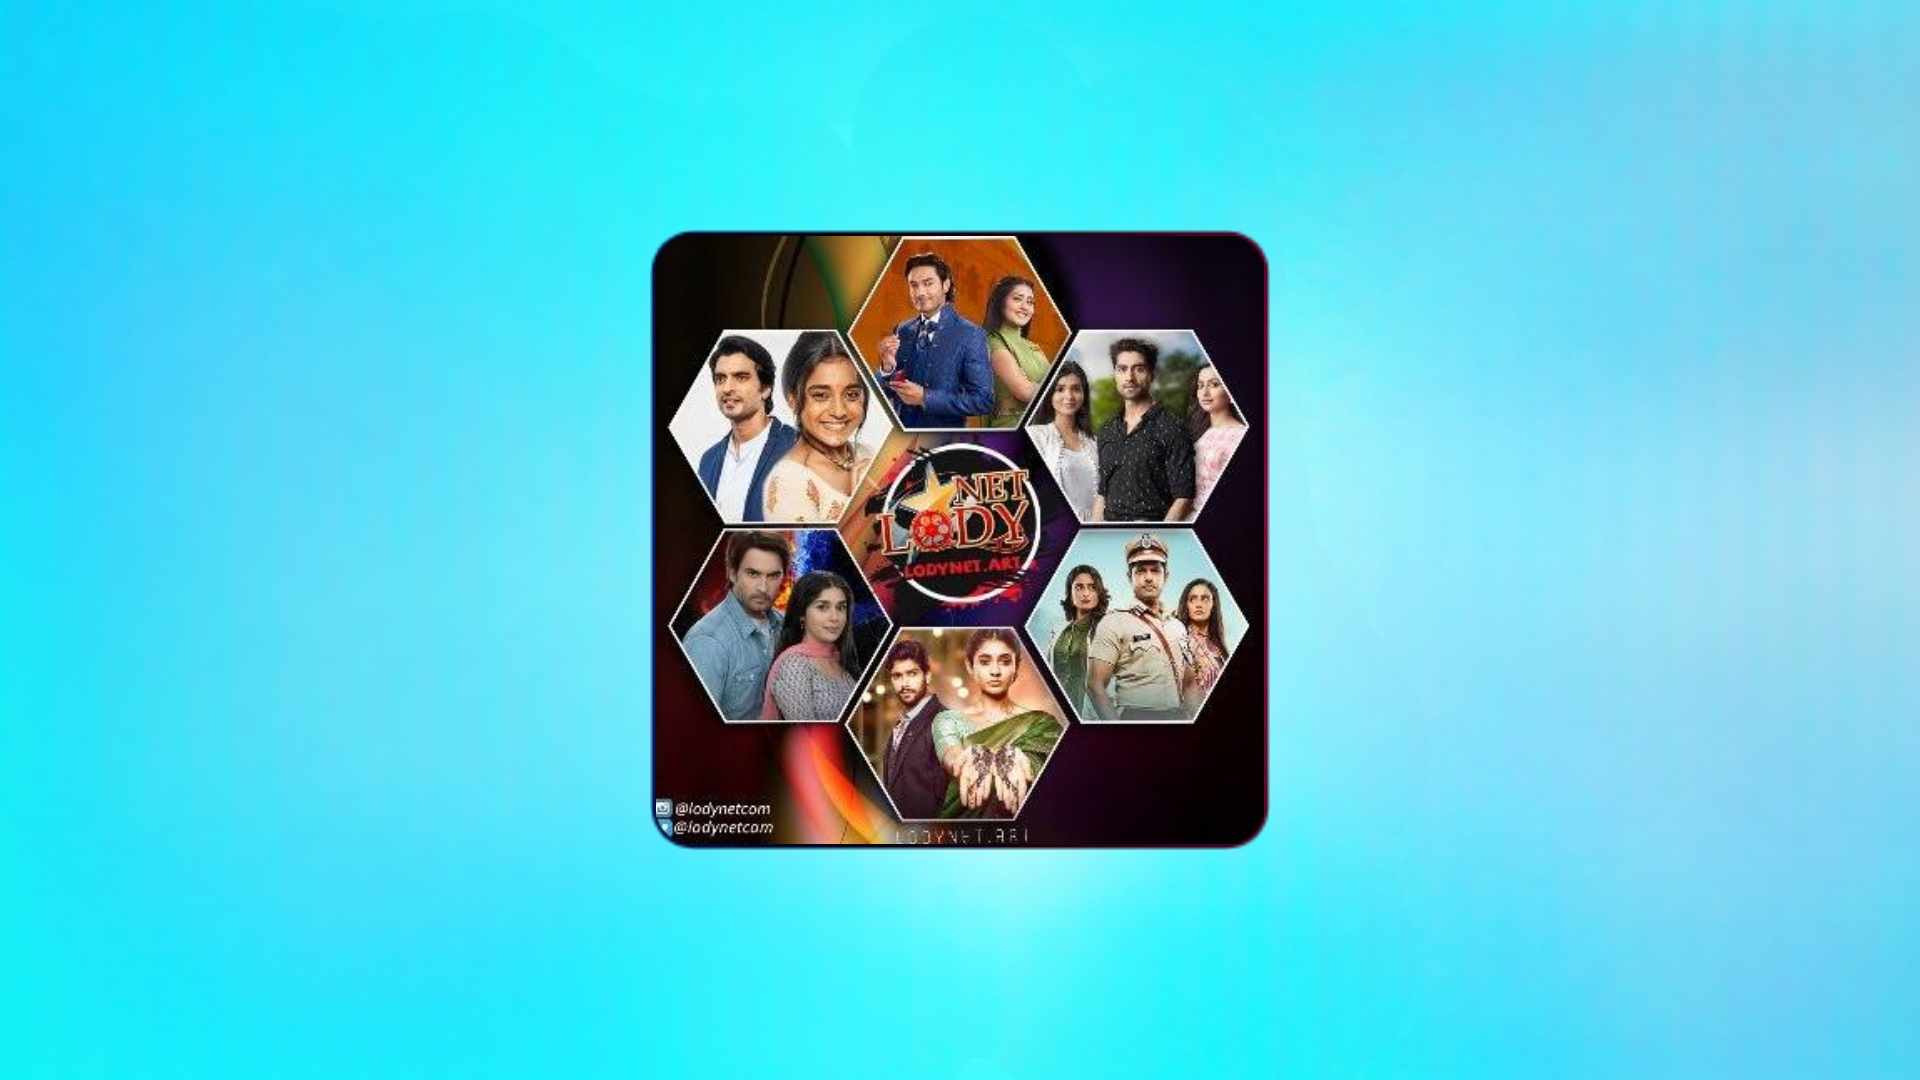 הורד את Lodynet 2024 Lodynet כדי לצפות בסרטים וסדרות הודיות עם כתוביות